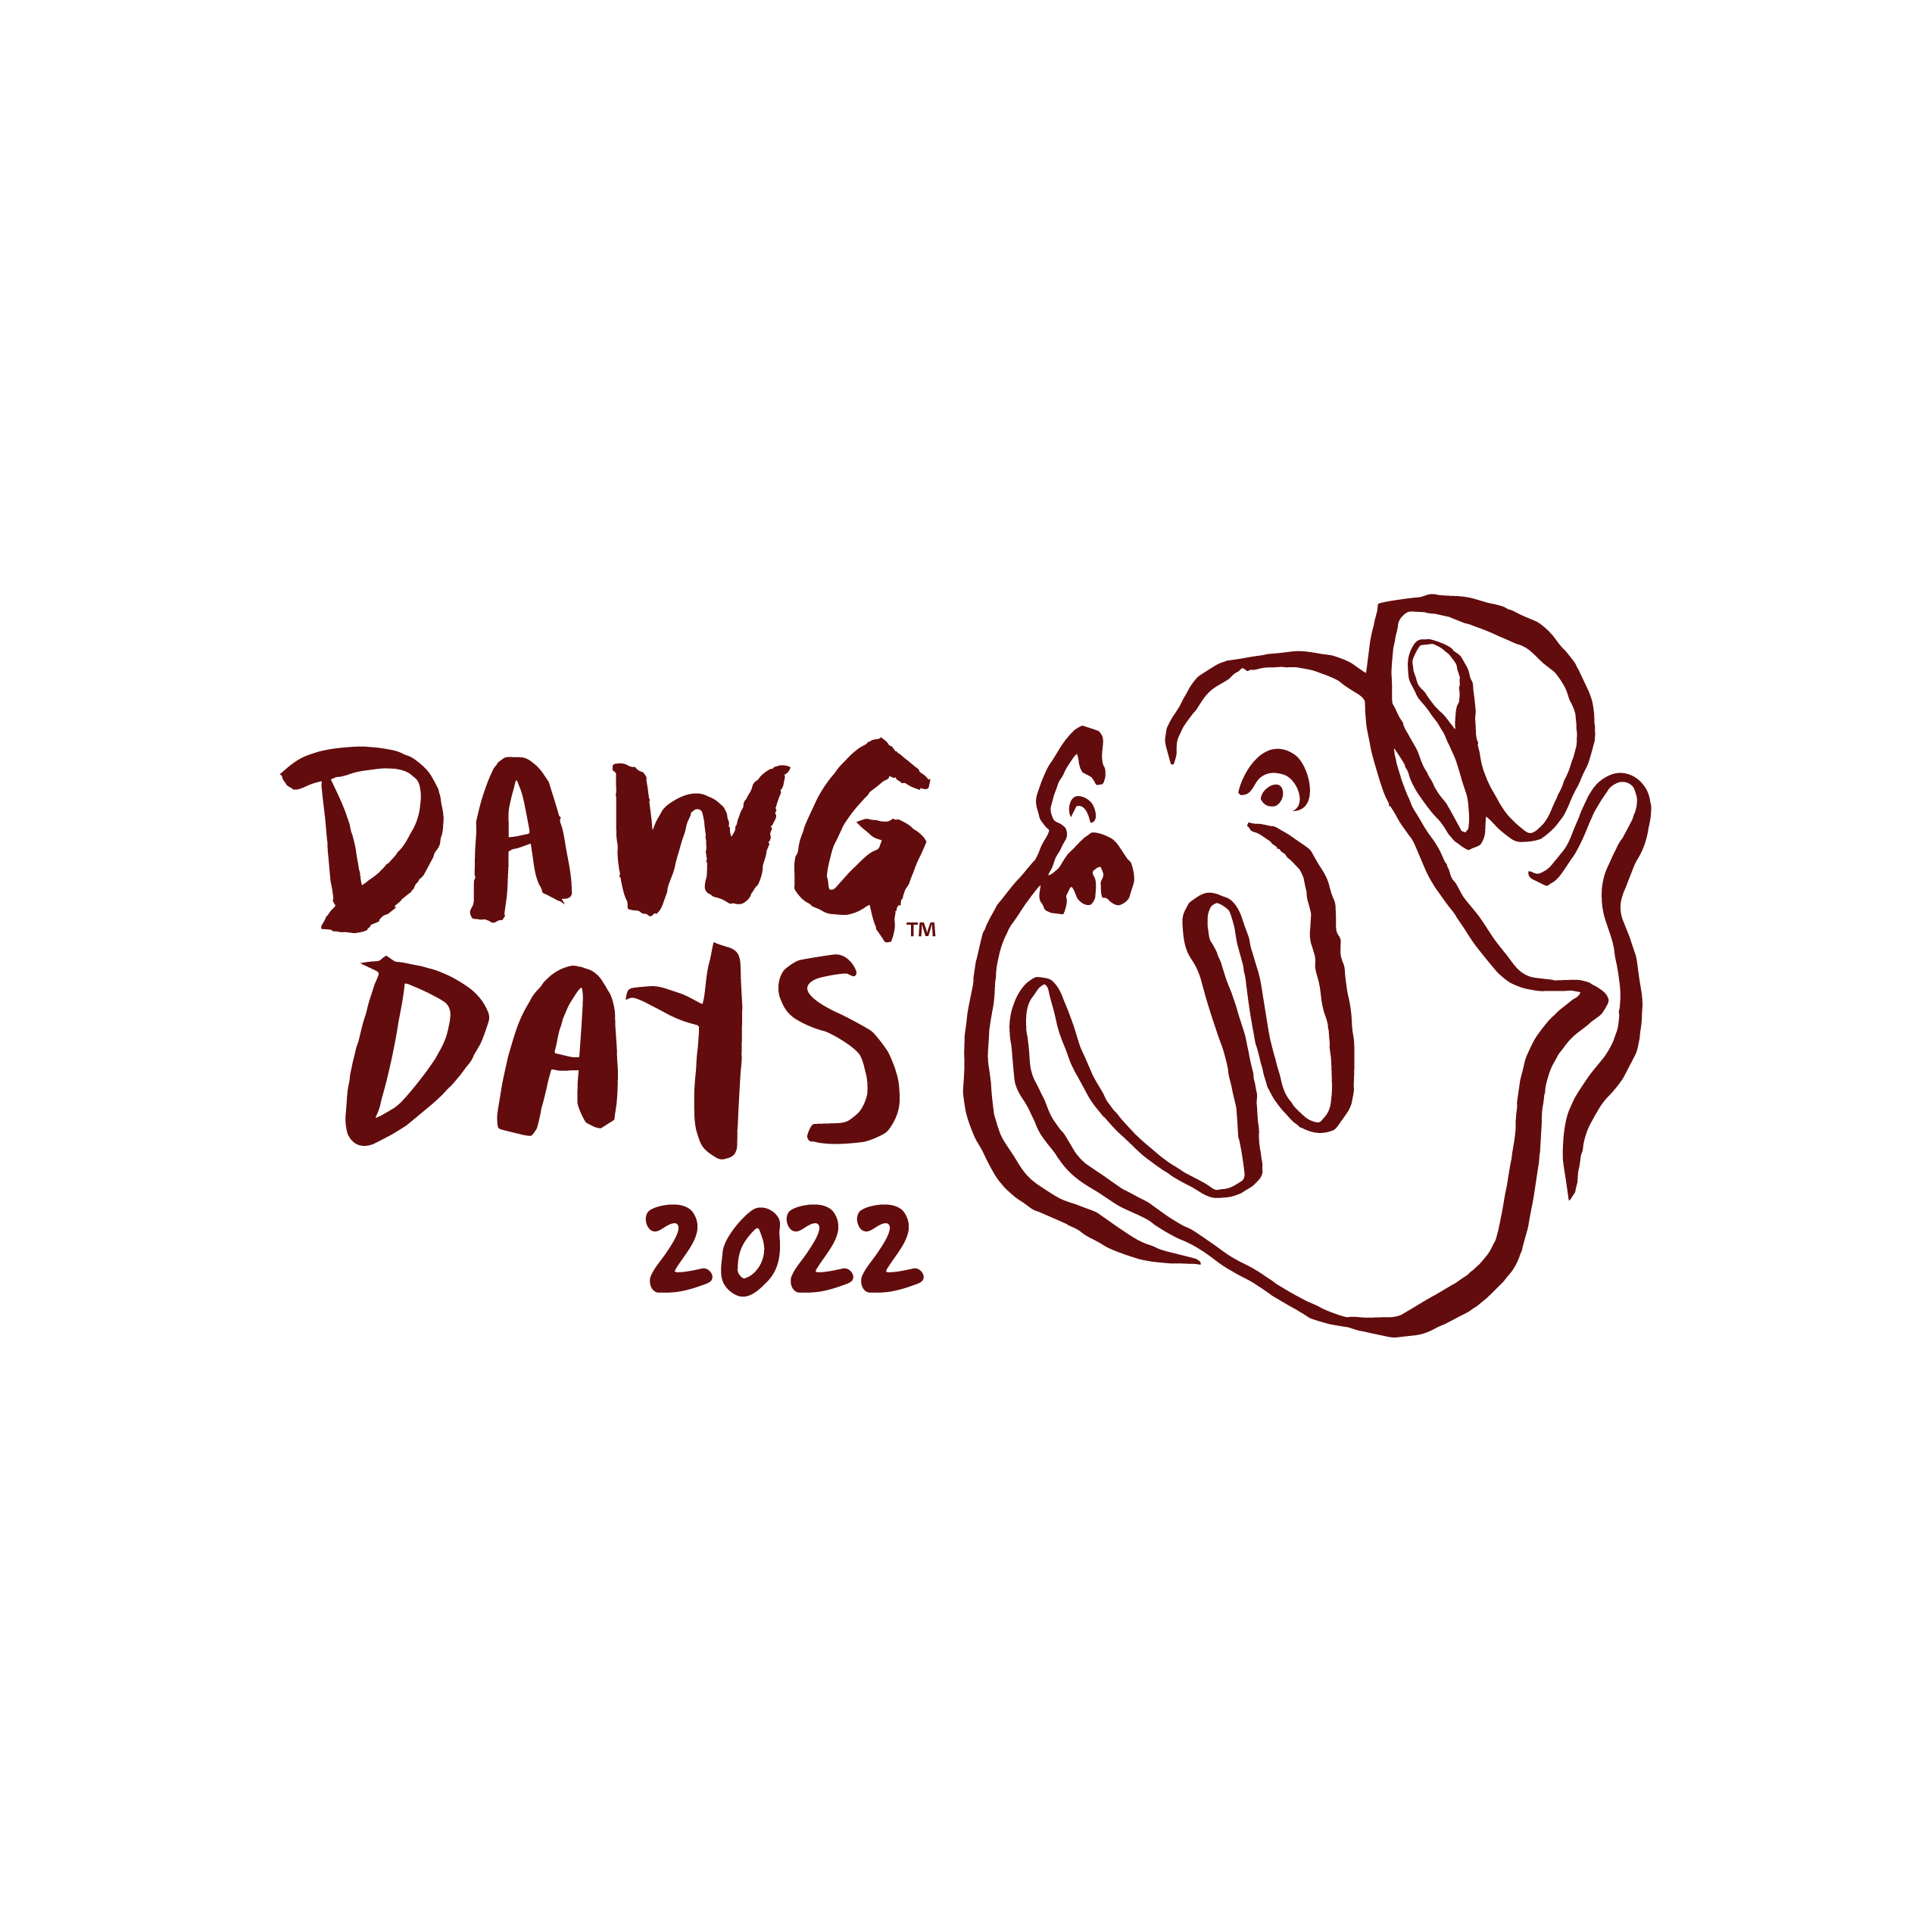 Dawg Days 2022 Logo